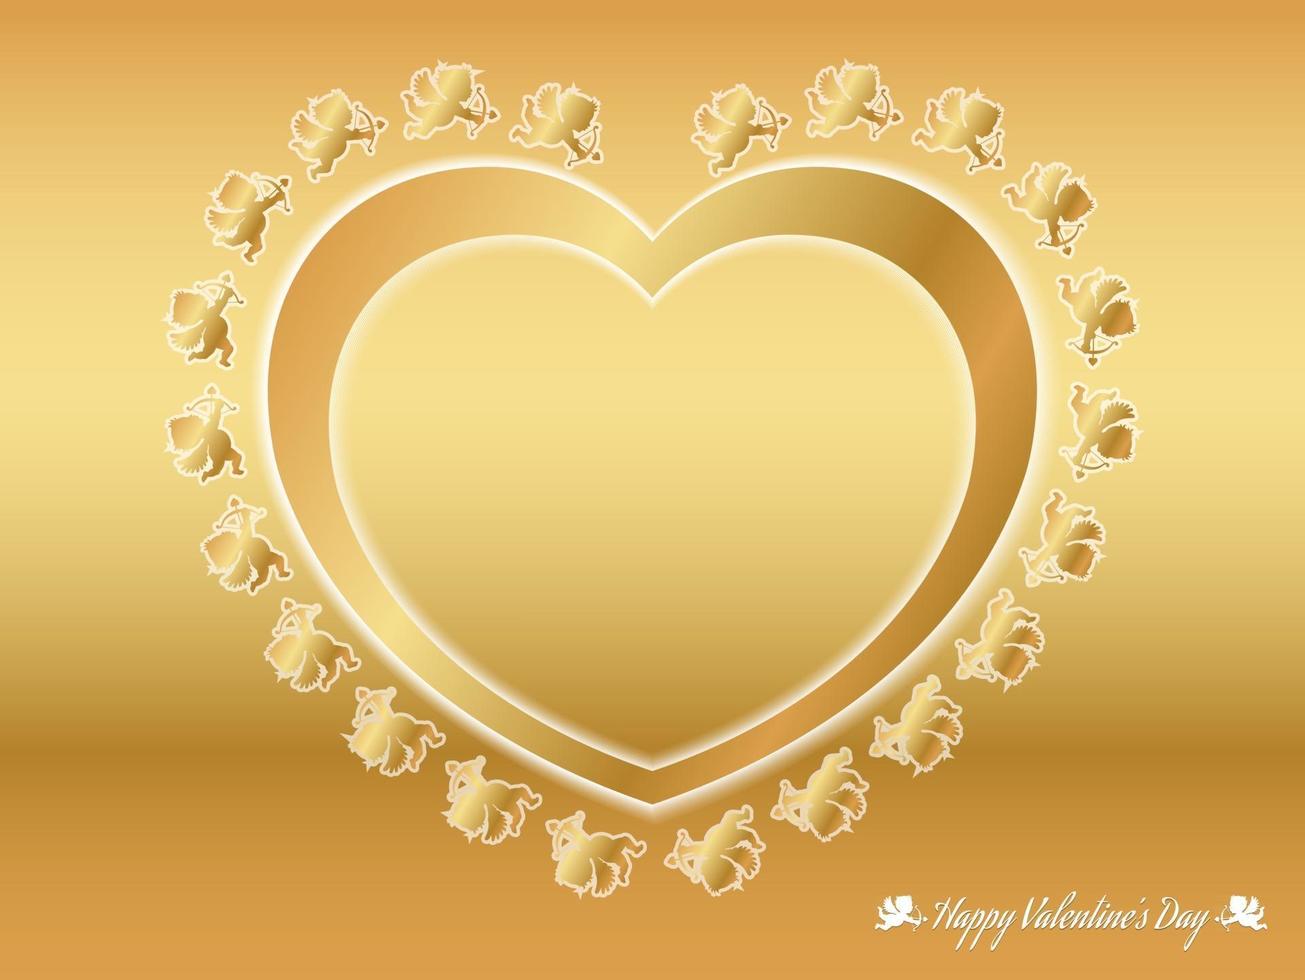 Valentinstag-Vektor-Hintergrund-Illustration mit goldenen Amoren, die um ein goldenes Herz fliegen vektor